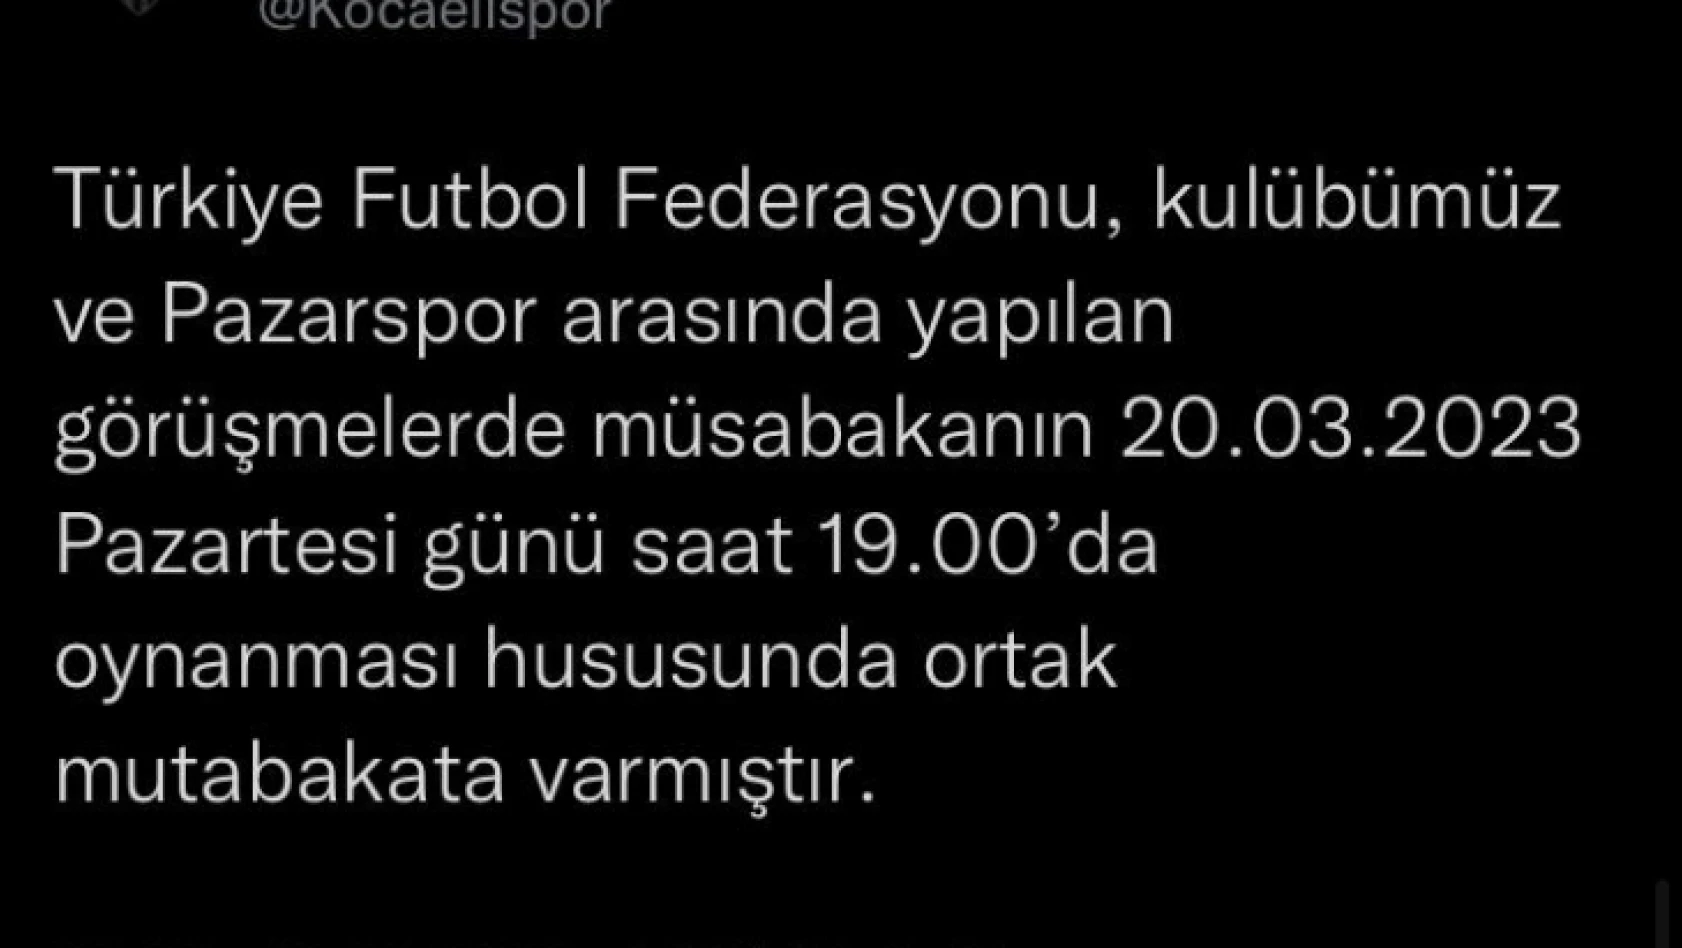 Hava muhalefeti seyahati engelledi, Kocaelispor-Pazarspor maçı ertelendi